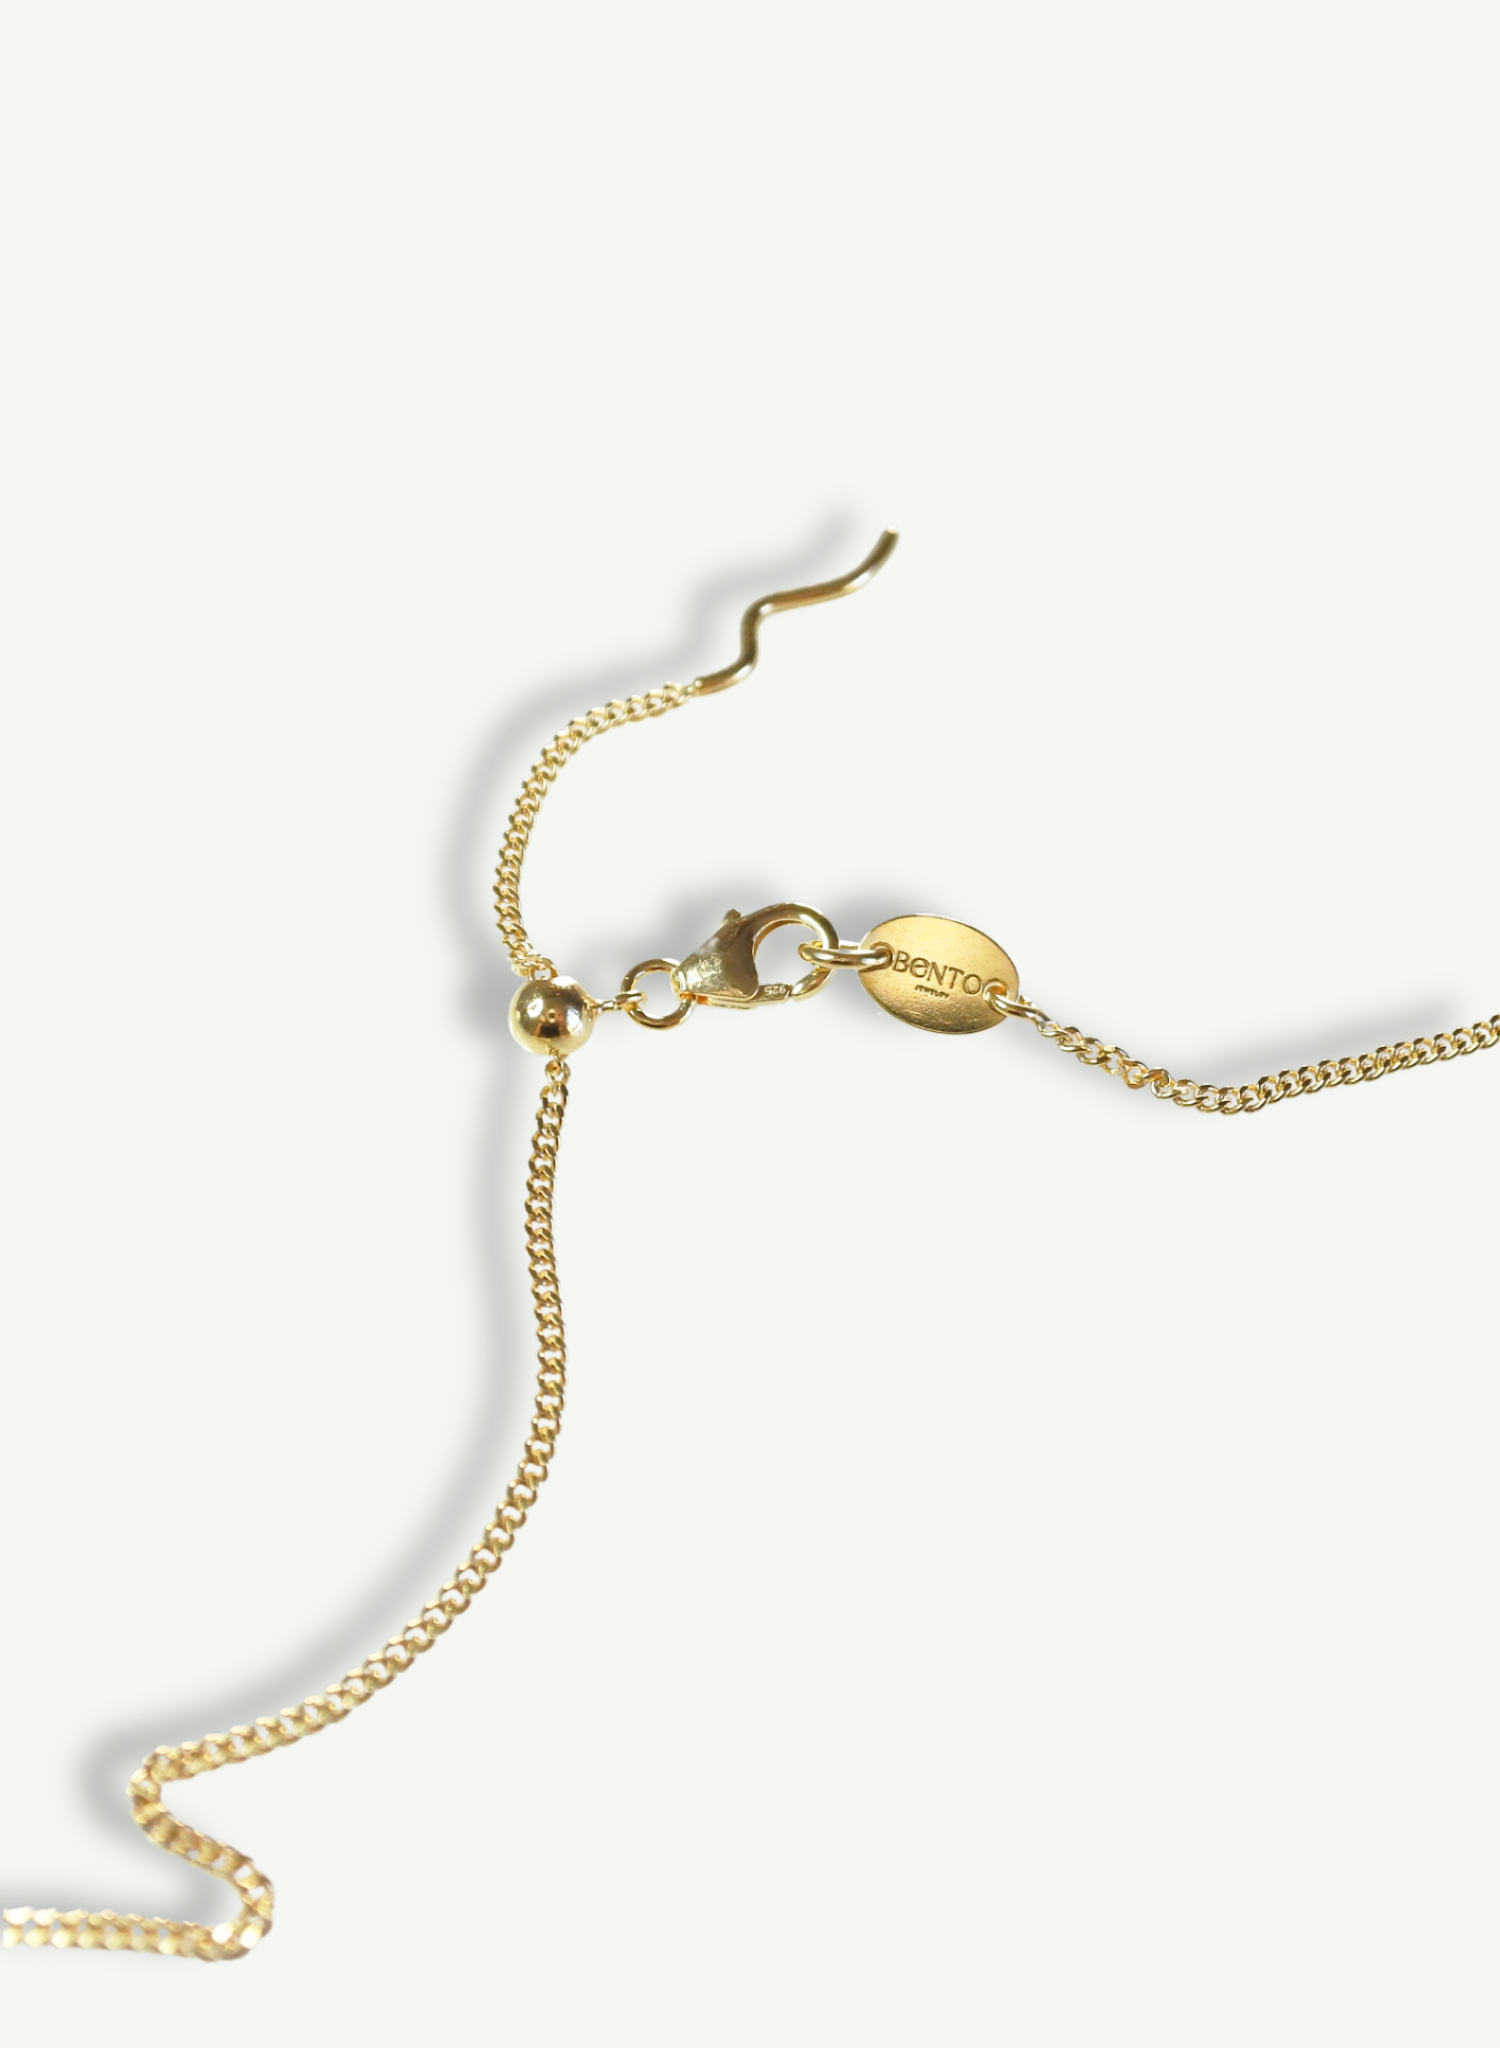 collier-demi-lune-plaqué-or-bijou-femme-madeinfrance-fait-en-france-Bento-jewelry